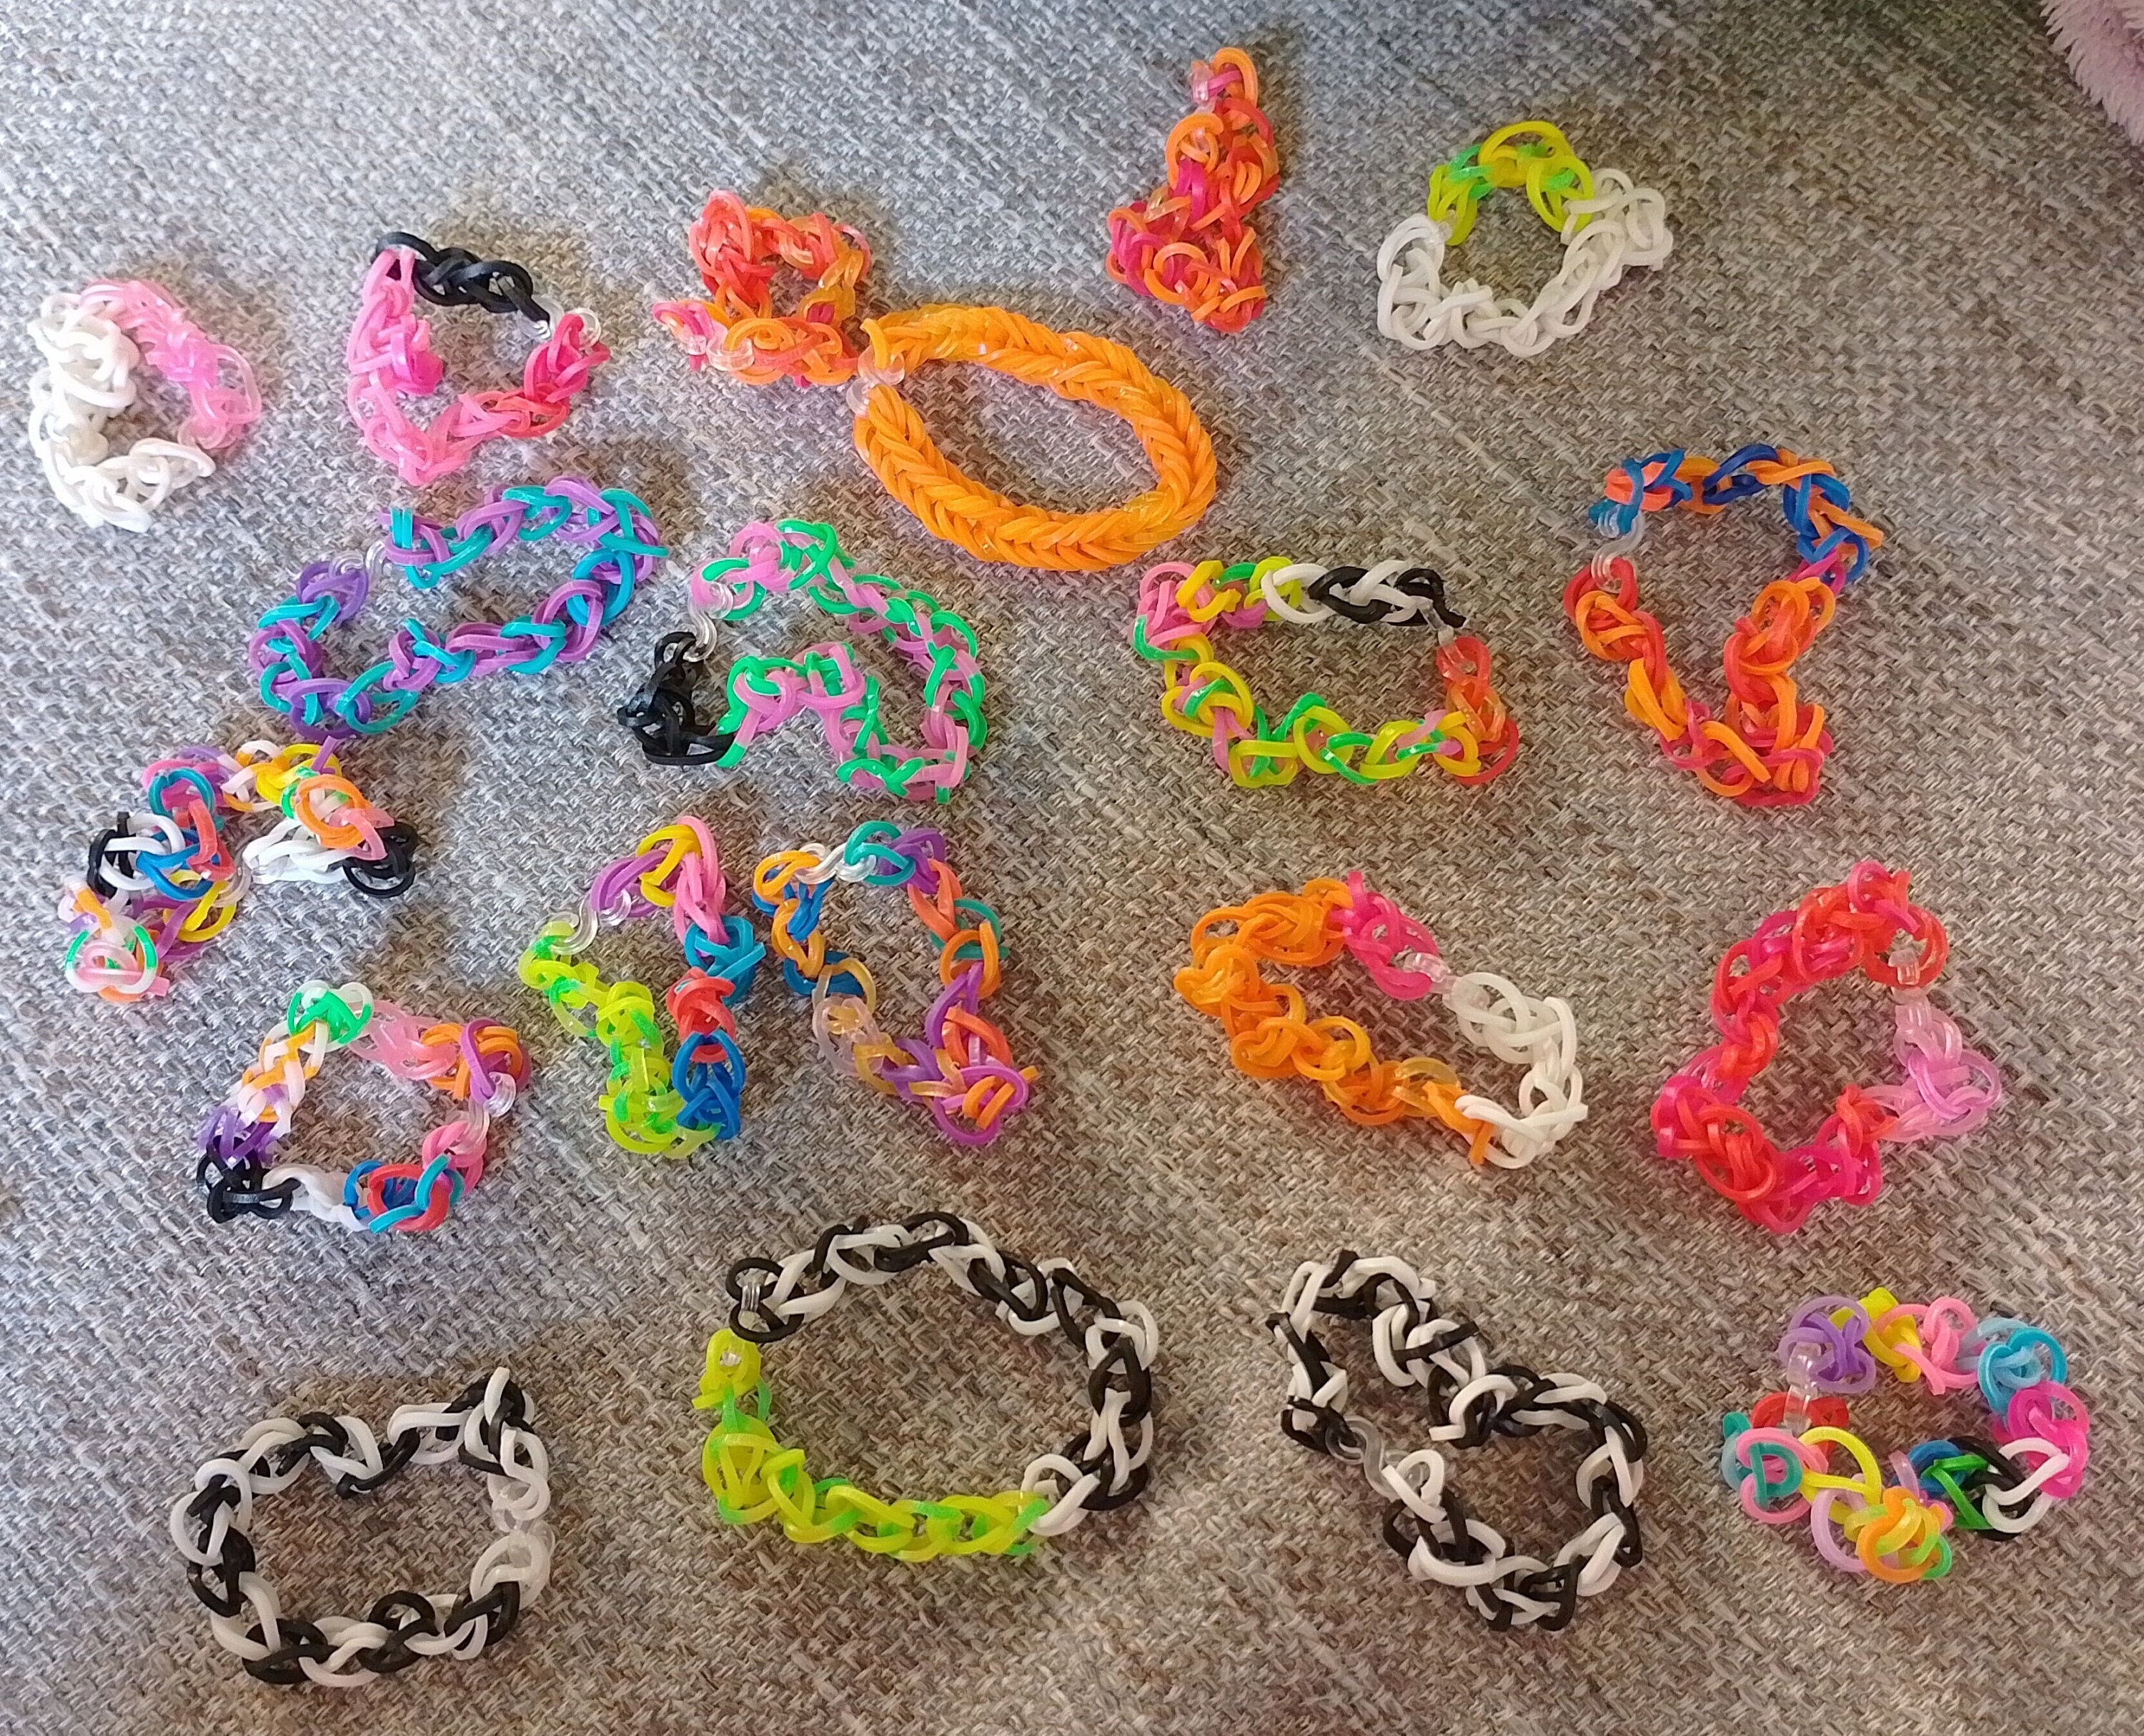 600-1500pcs+ Colorful Loom Bands Set Candy Color Bracelet Making Kit DIY  Rubber Band Woven Bracelet Kit Girls Craft Toys Gifts